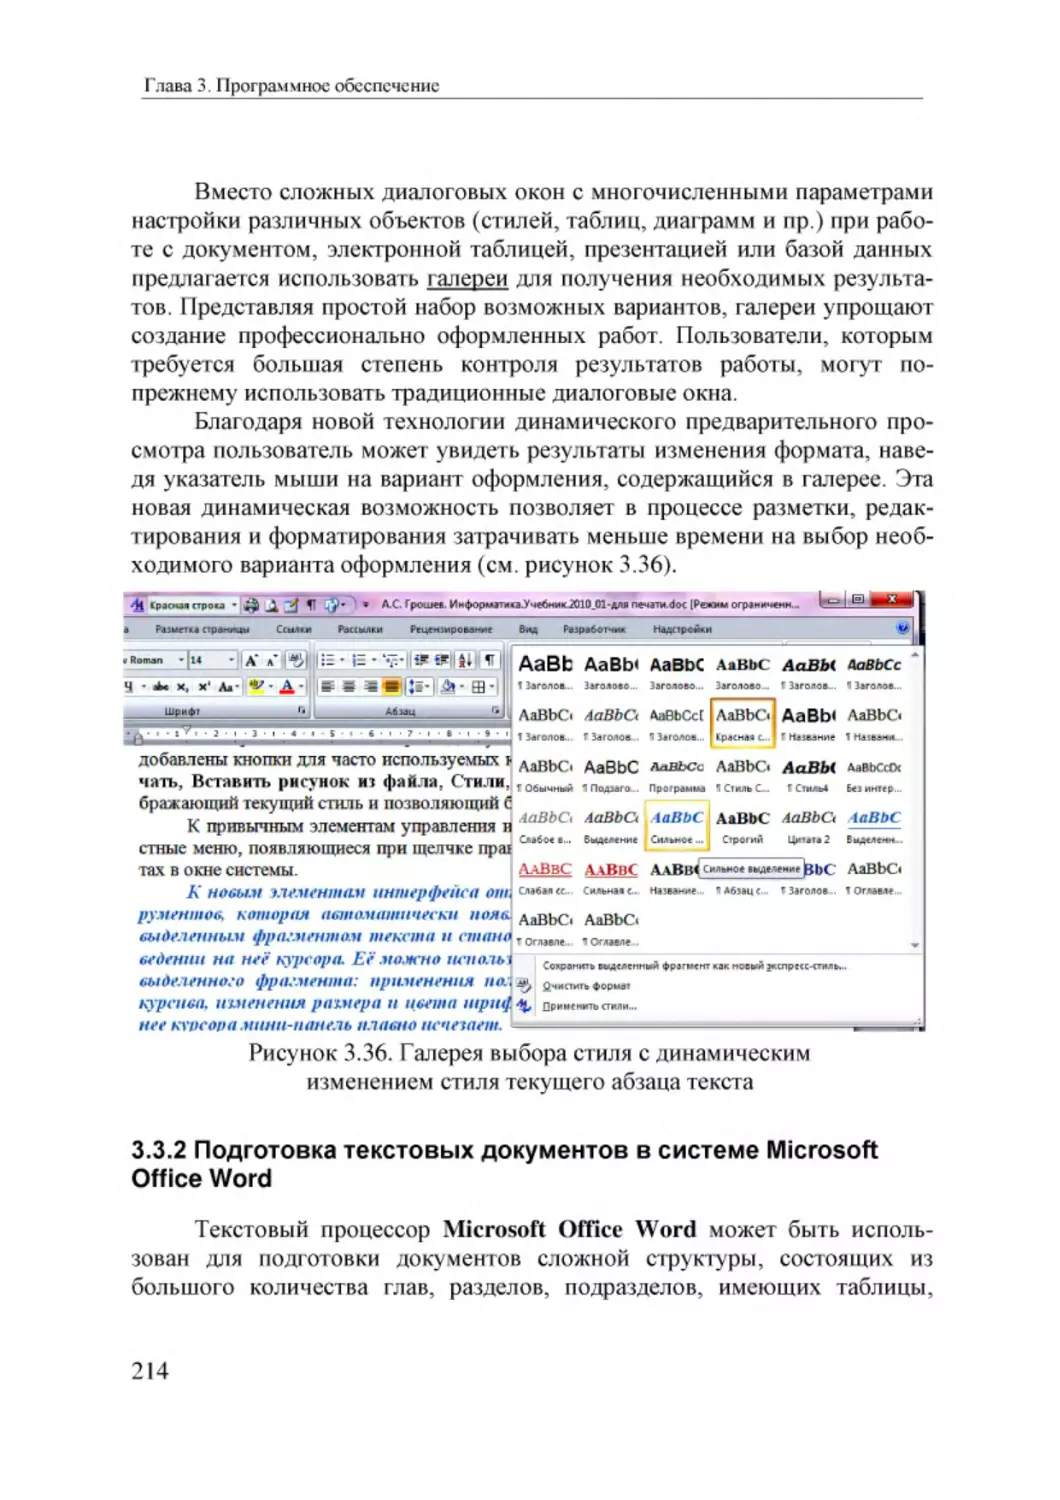 Informatika_Uchebnik_dlya_vuzov_2010 214